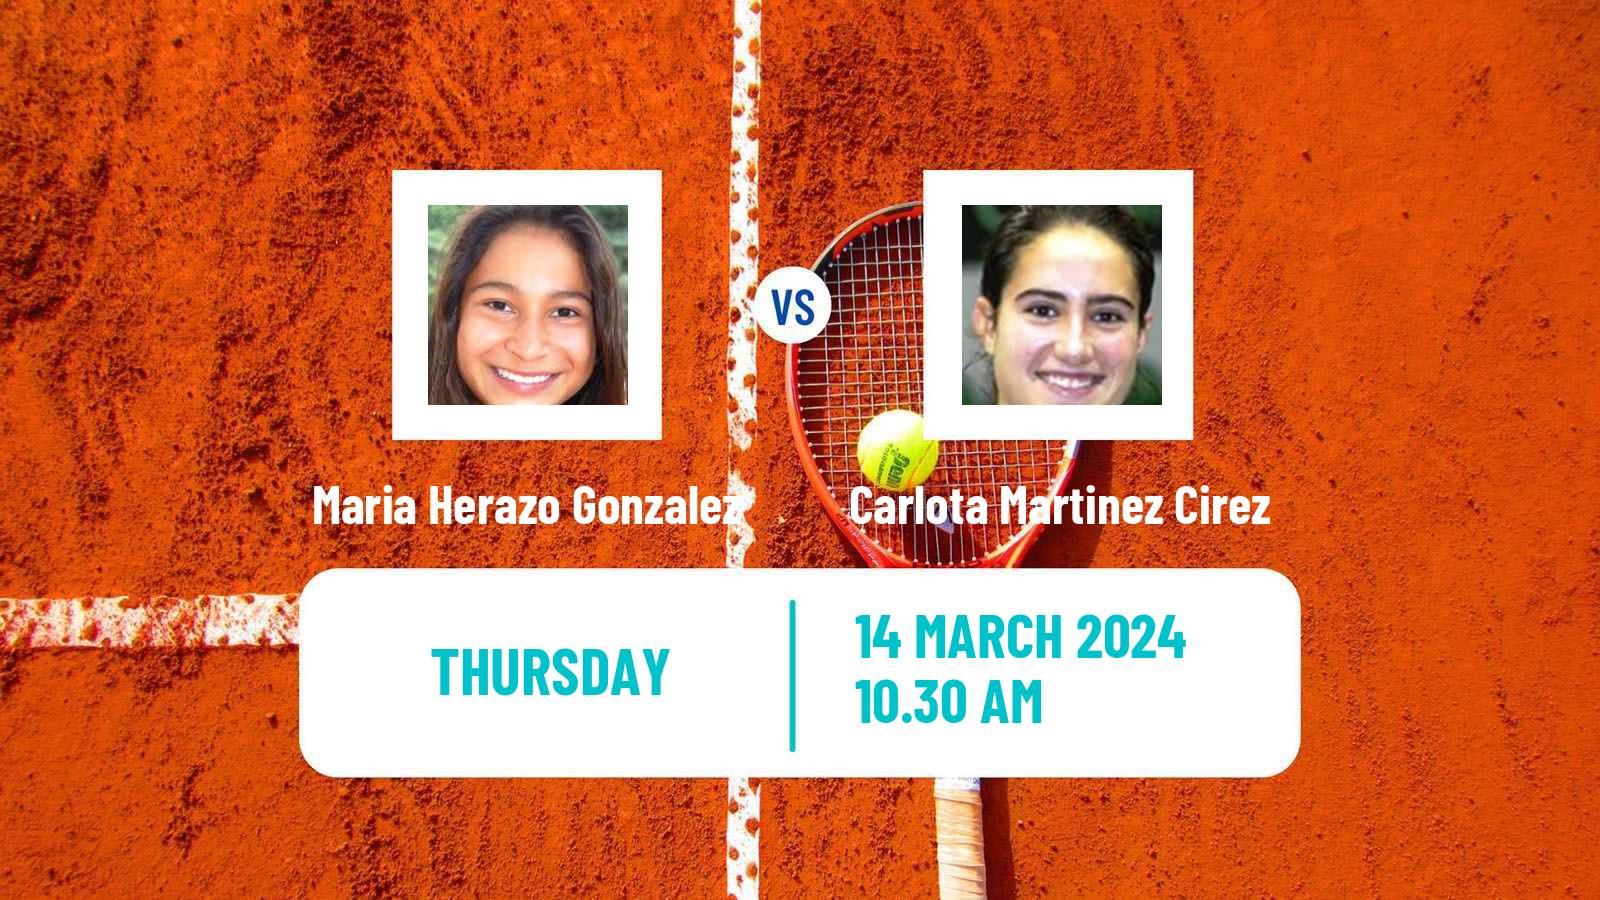 Tennis ITF W35 Santo Domingo 2 Women Maria Herazo Gonzalez - Carlota Martinez Cirez